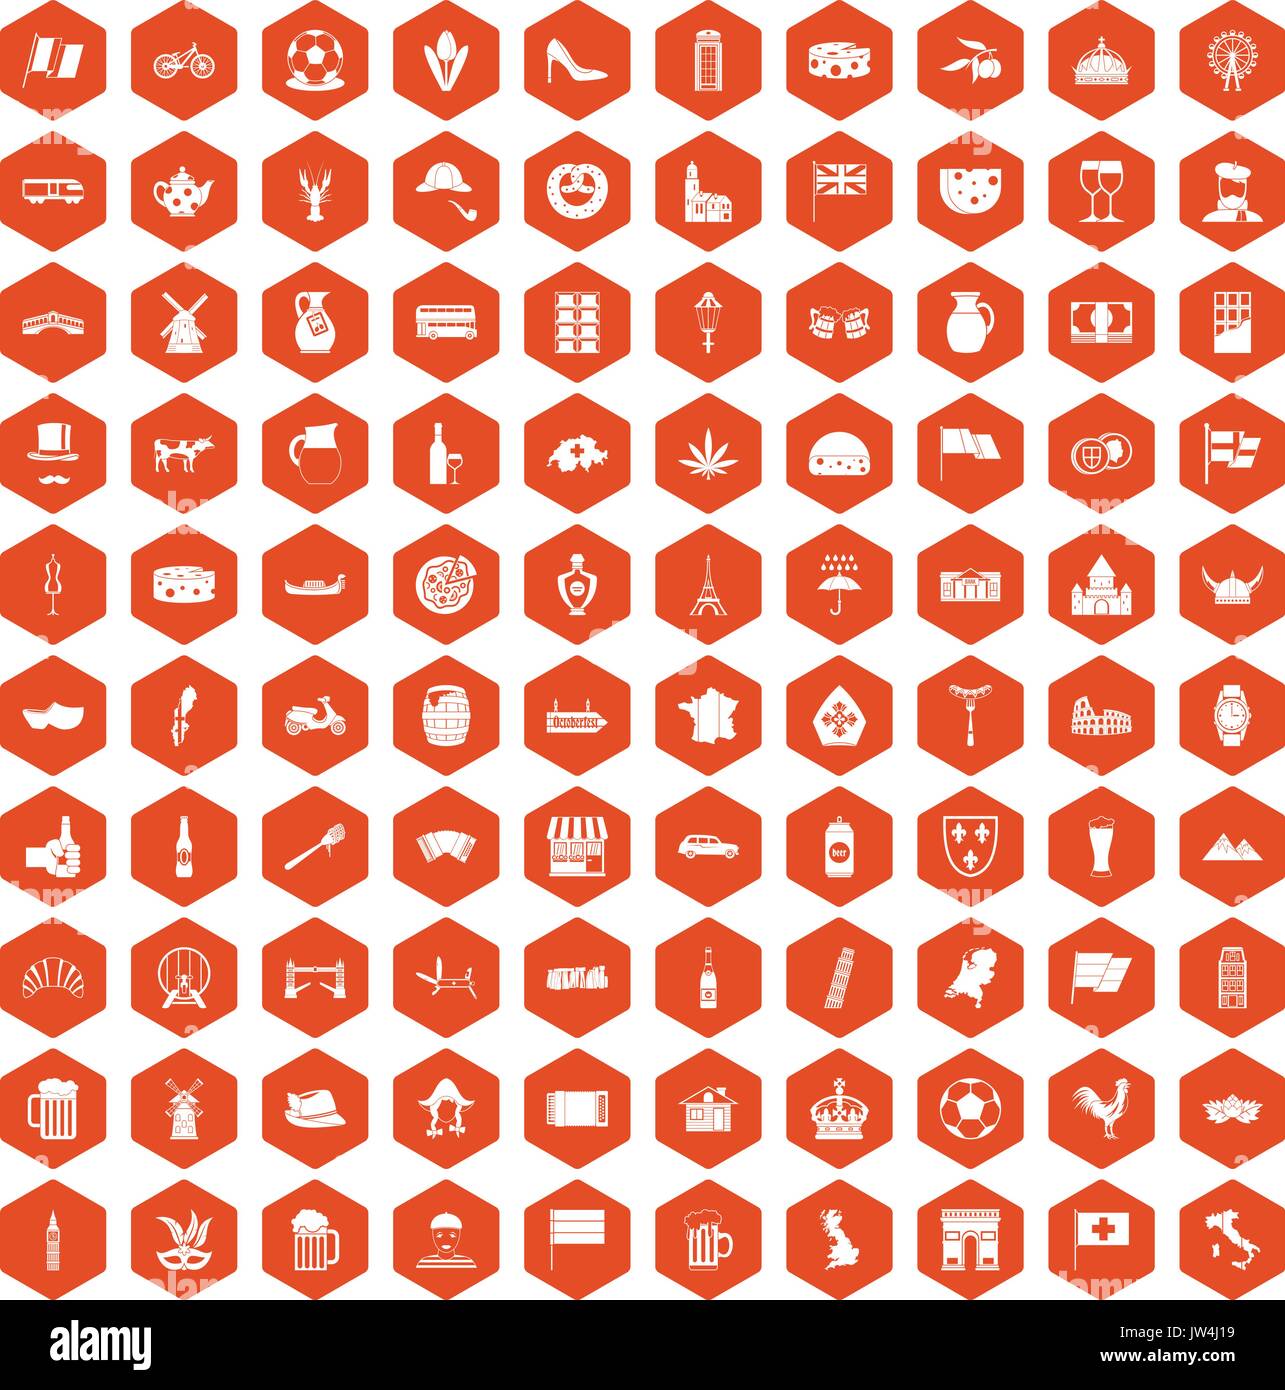 100 europe countries icons hexagon orange Stock Vector